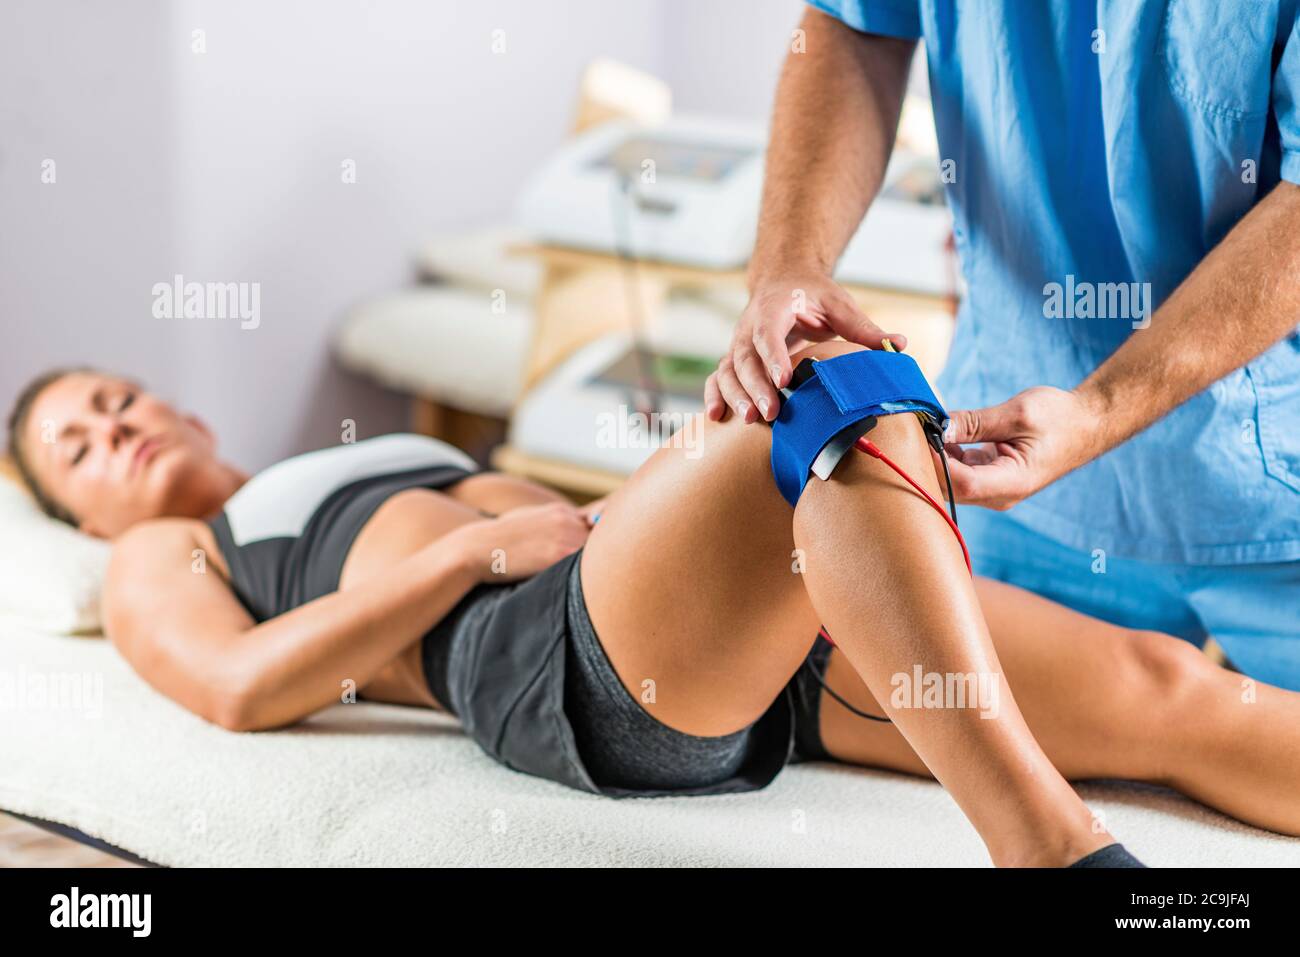 https://c8.alamy.com/compes/2c9jfaj/estimulacion-muscular-electrica-en-terapia-fisica-el-terapeuta-coloca-los-electrodos-en-la-rodilla-del-paciente-2c9jfaj.jpg